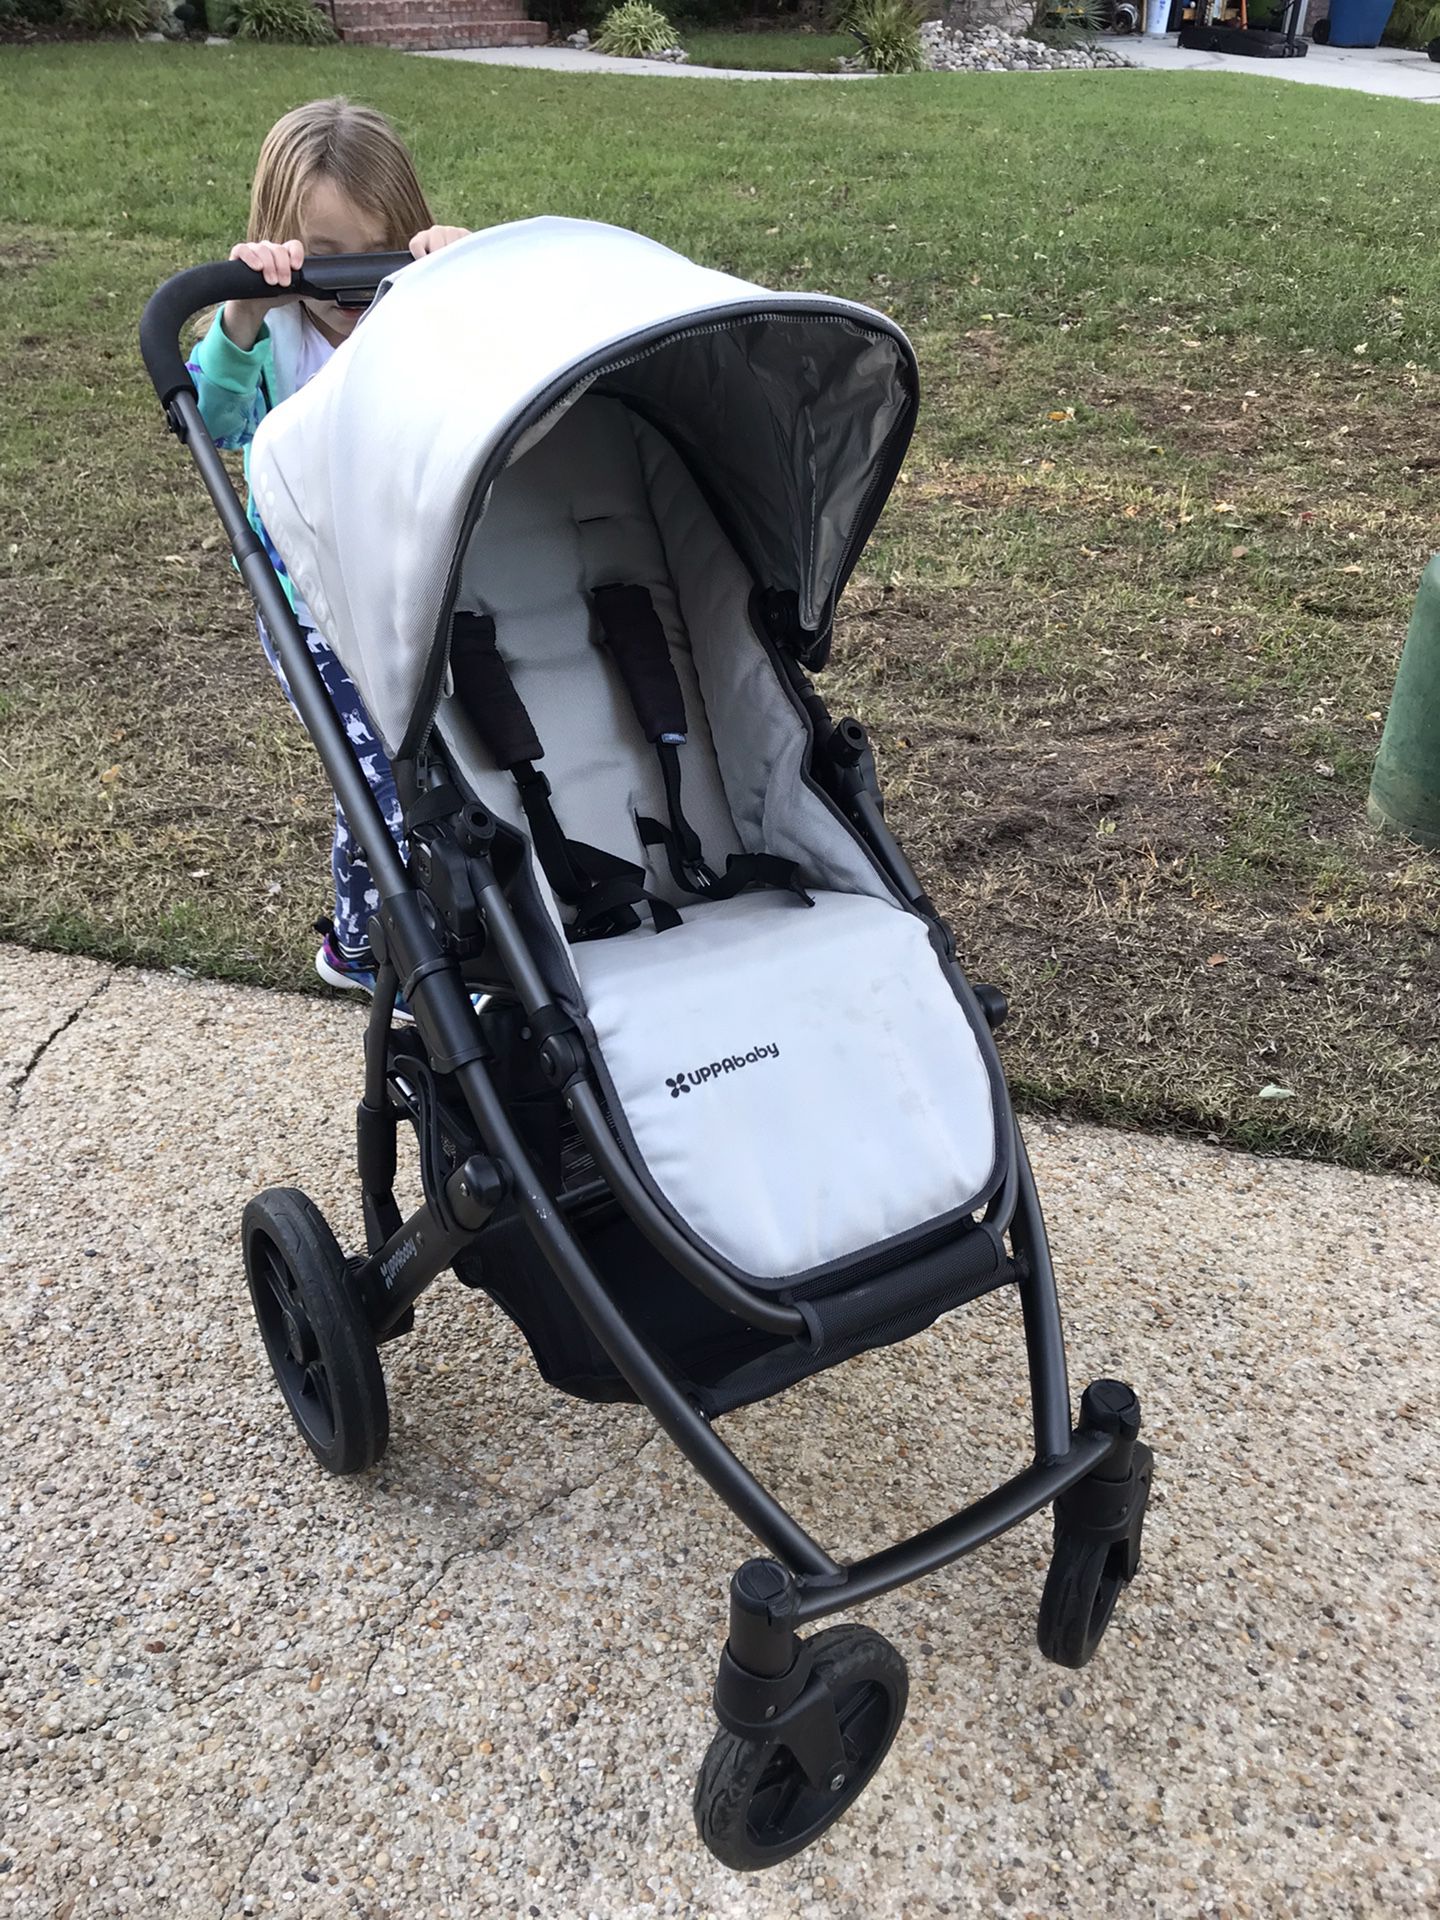 Stroller - Uppa Baby Vista